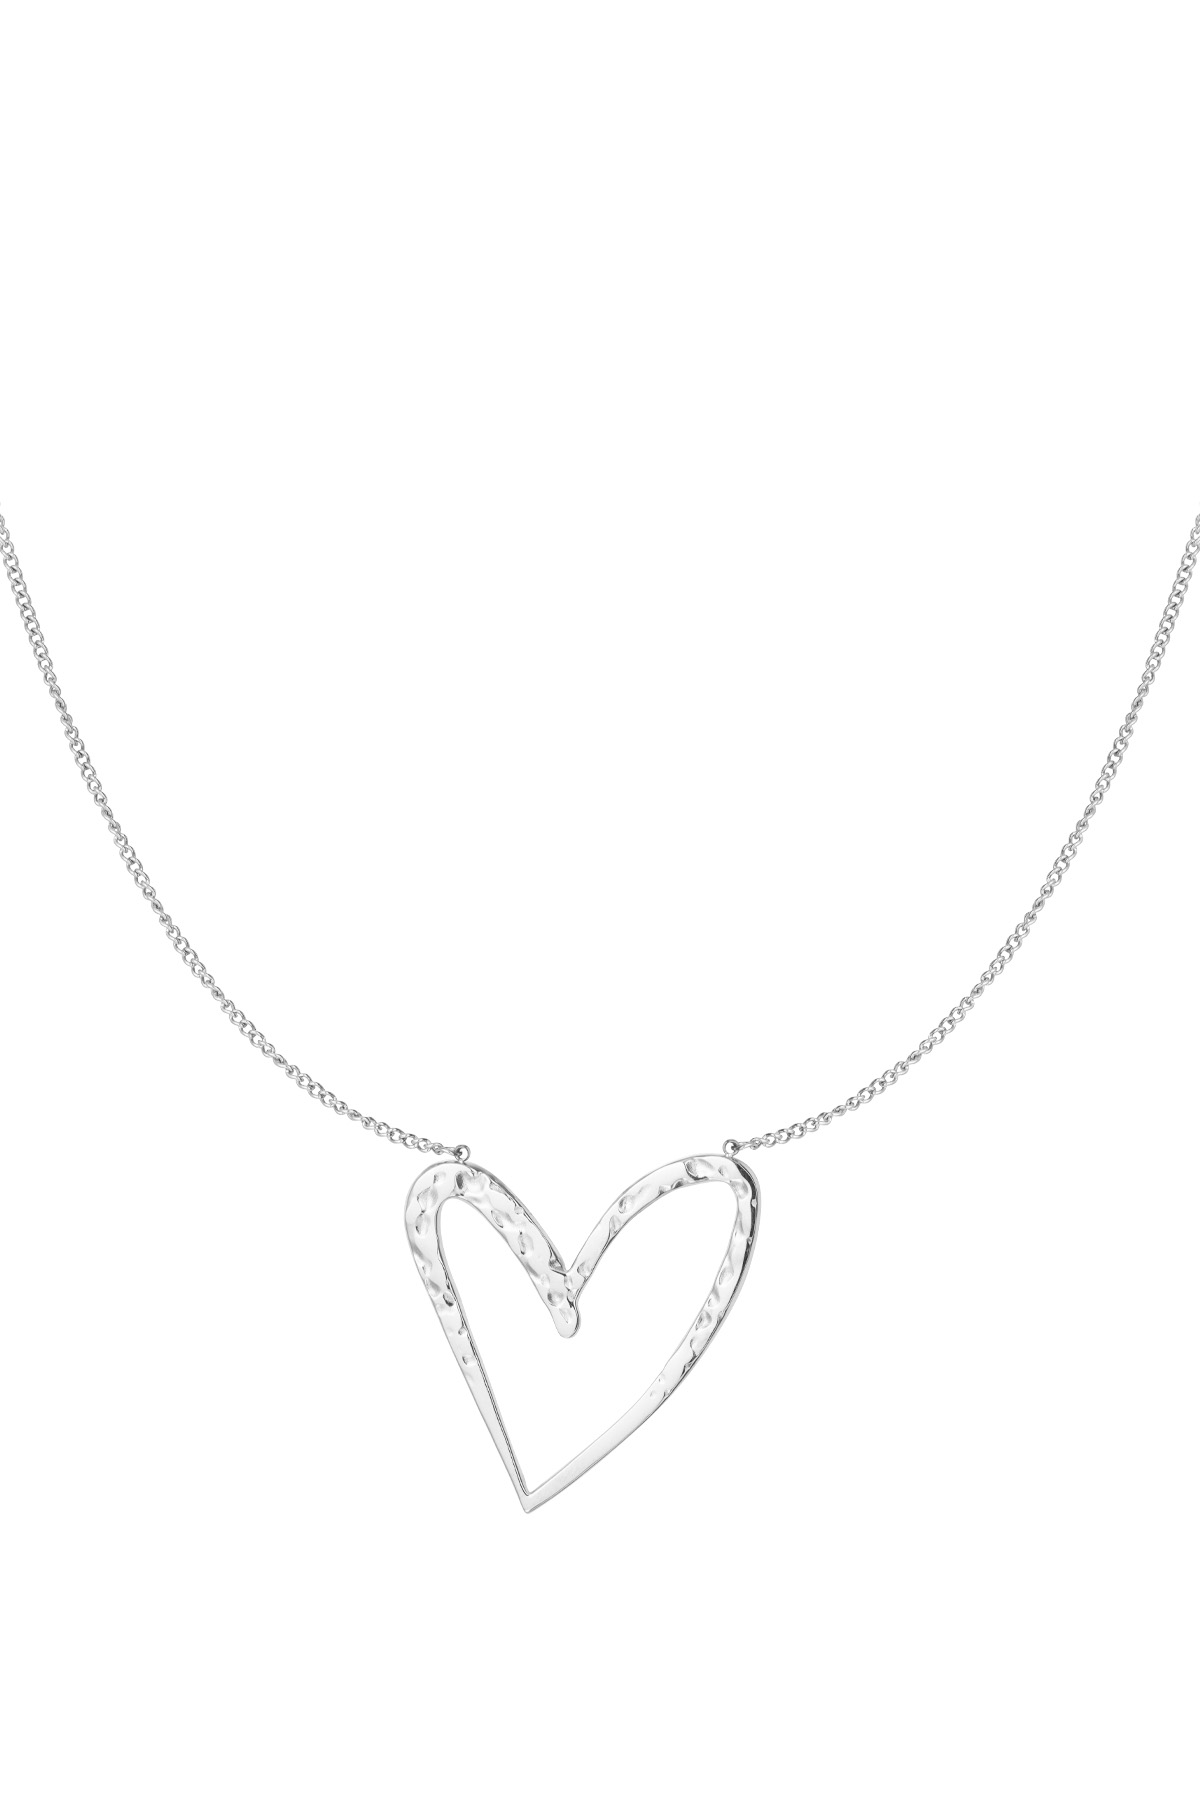 Halskette Herzdieb - Silber